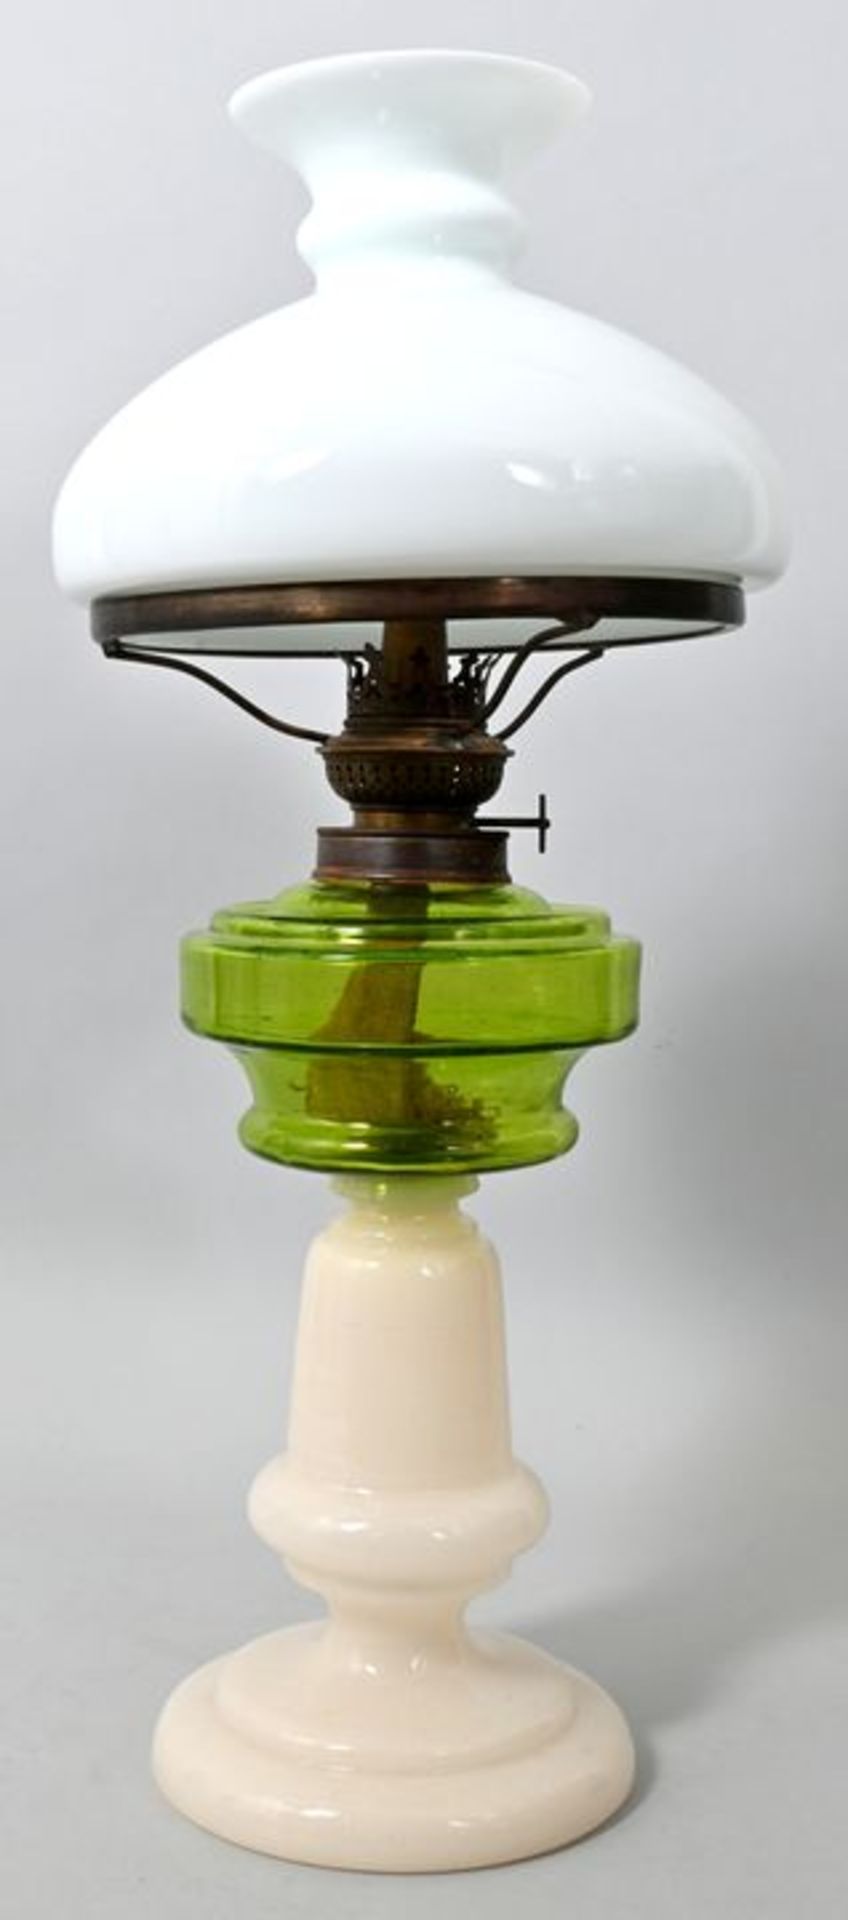 Petroleumlampe, um 1900Fuß Alabasterglas mit Abriss, Glastank in grünem Glas. Cosmos-Brenne